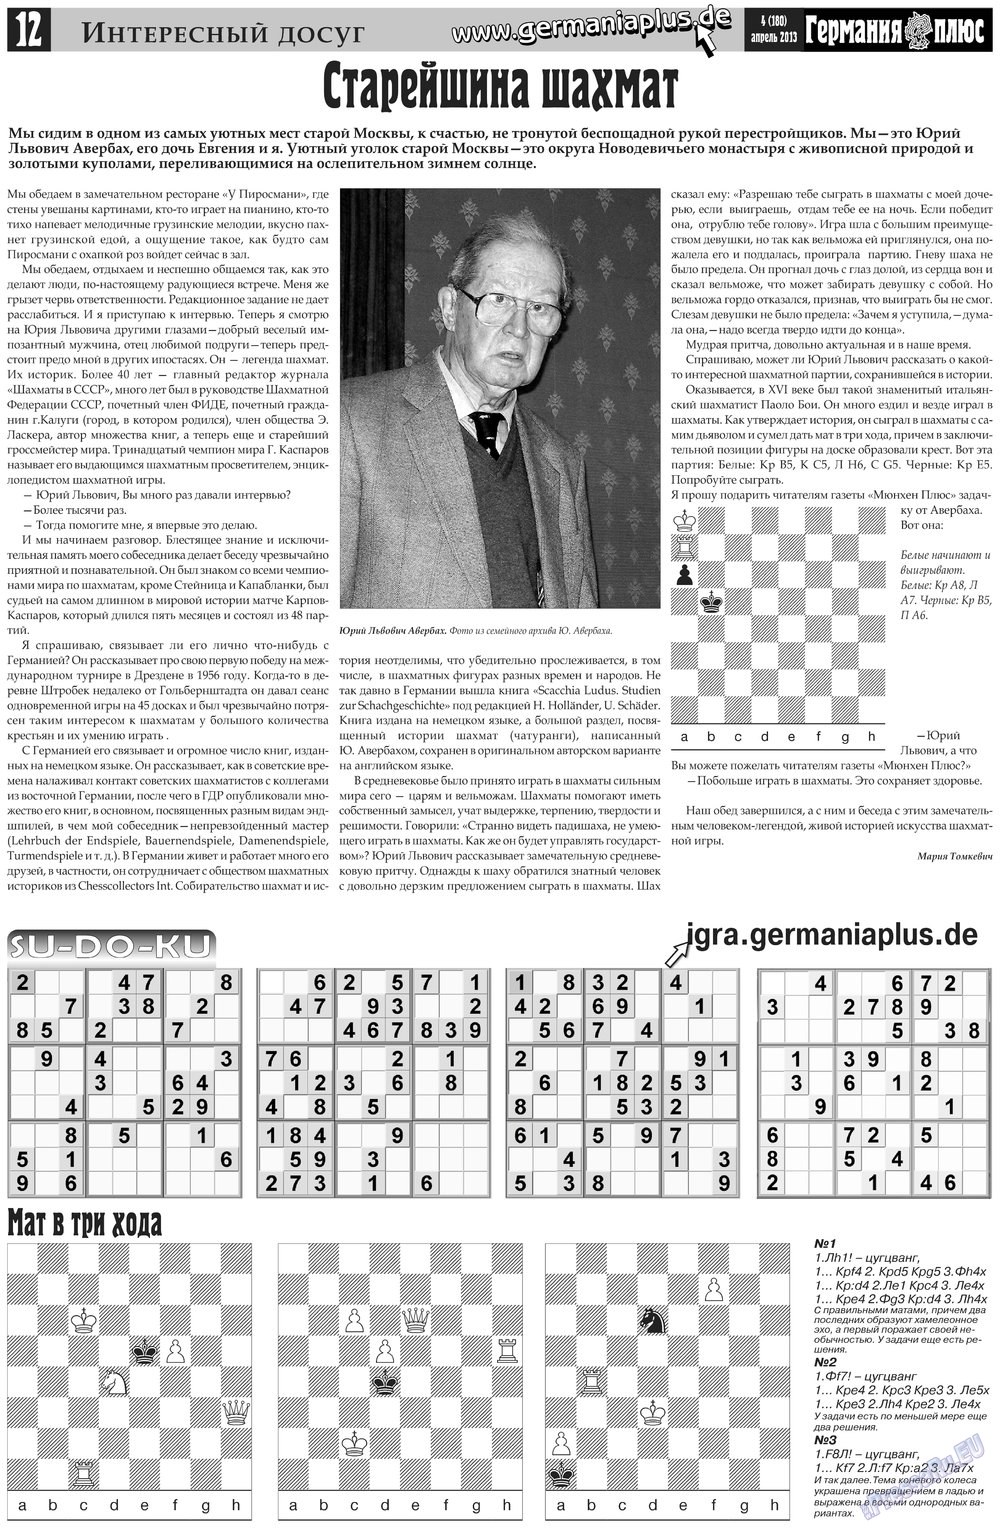 Германия плюс, газета. 2013 №4 стр.12